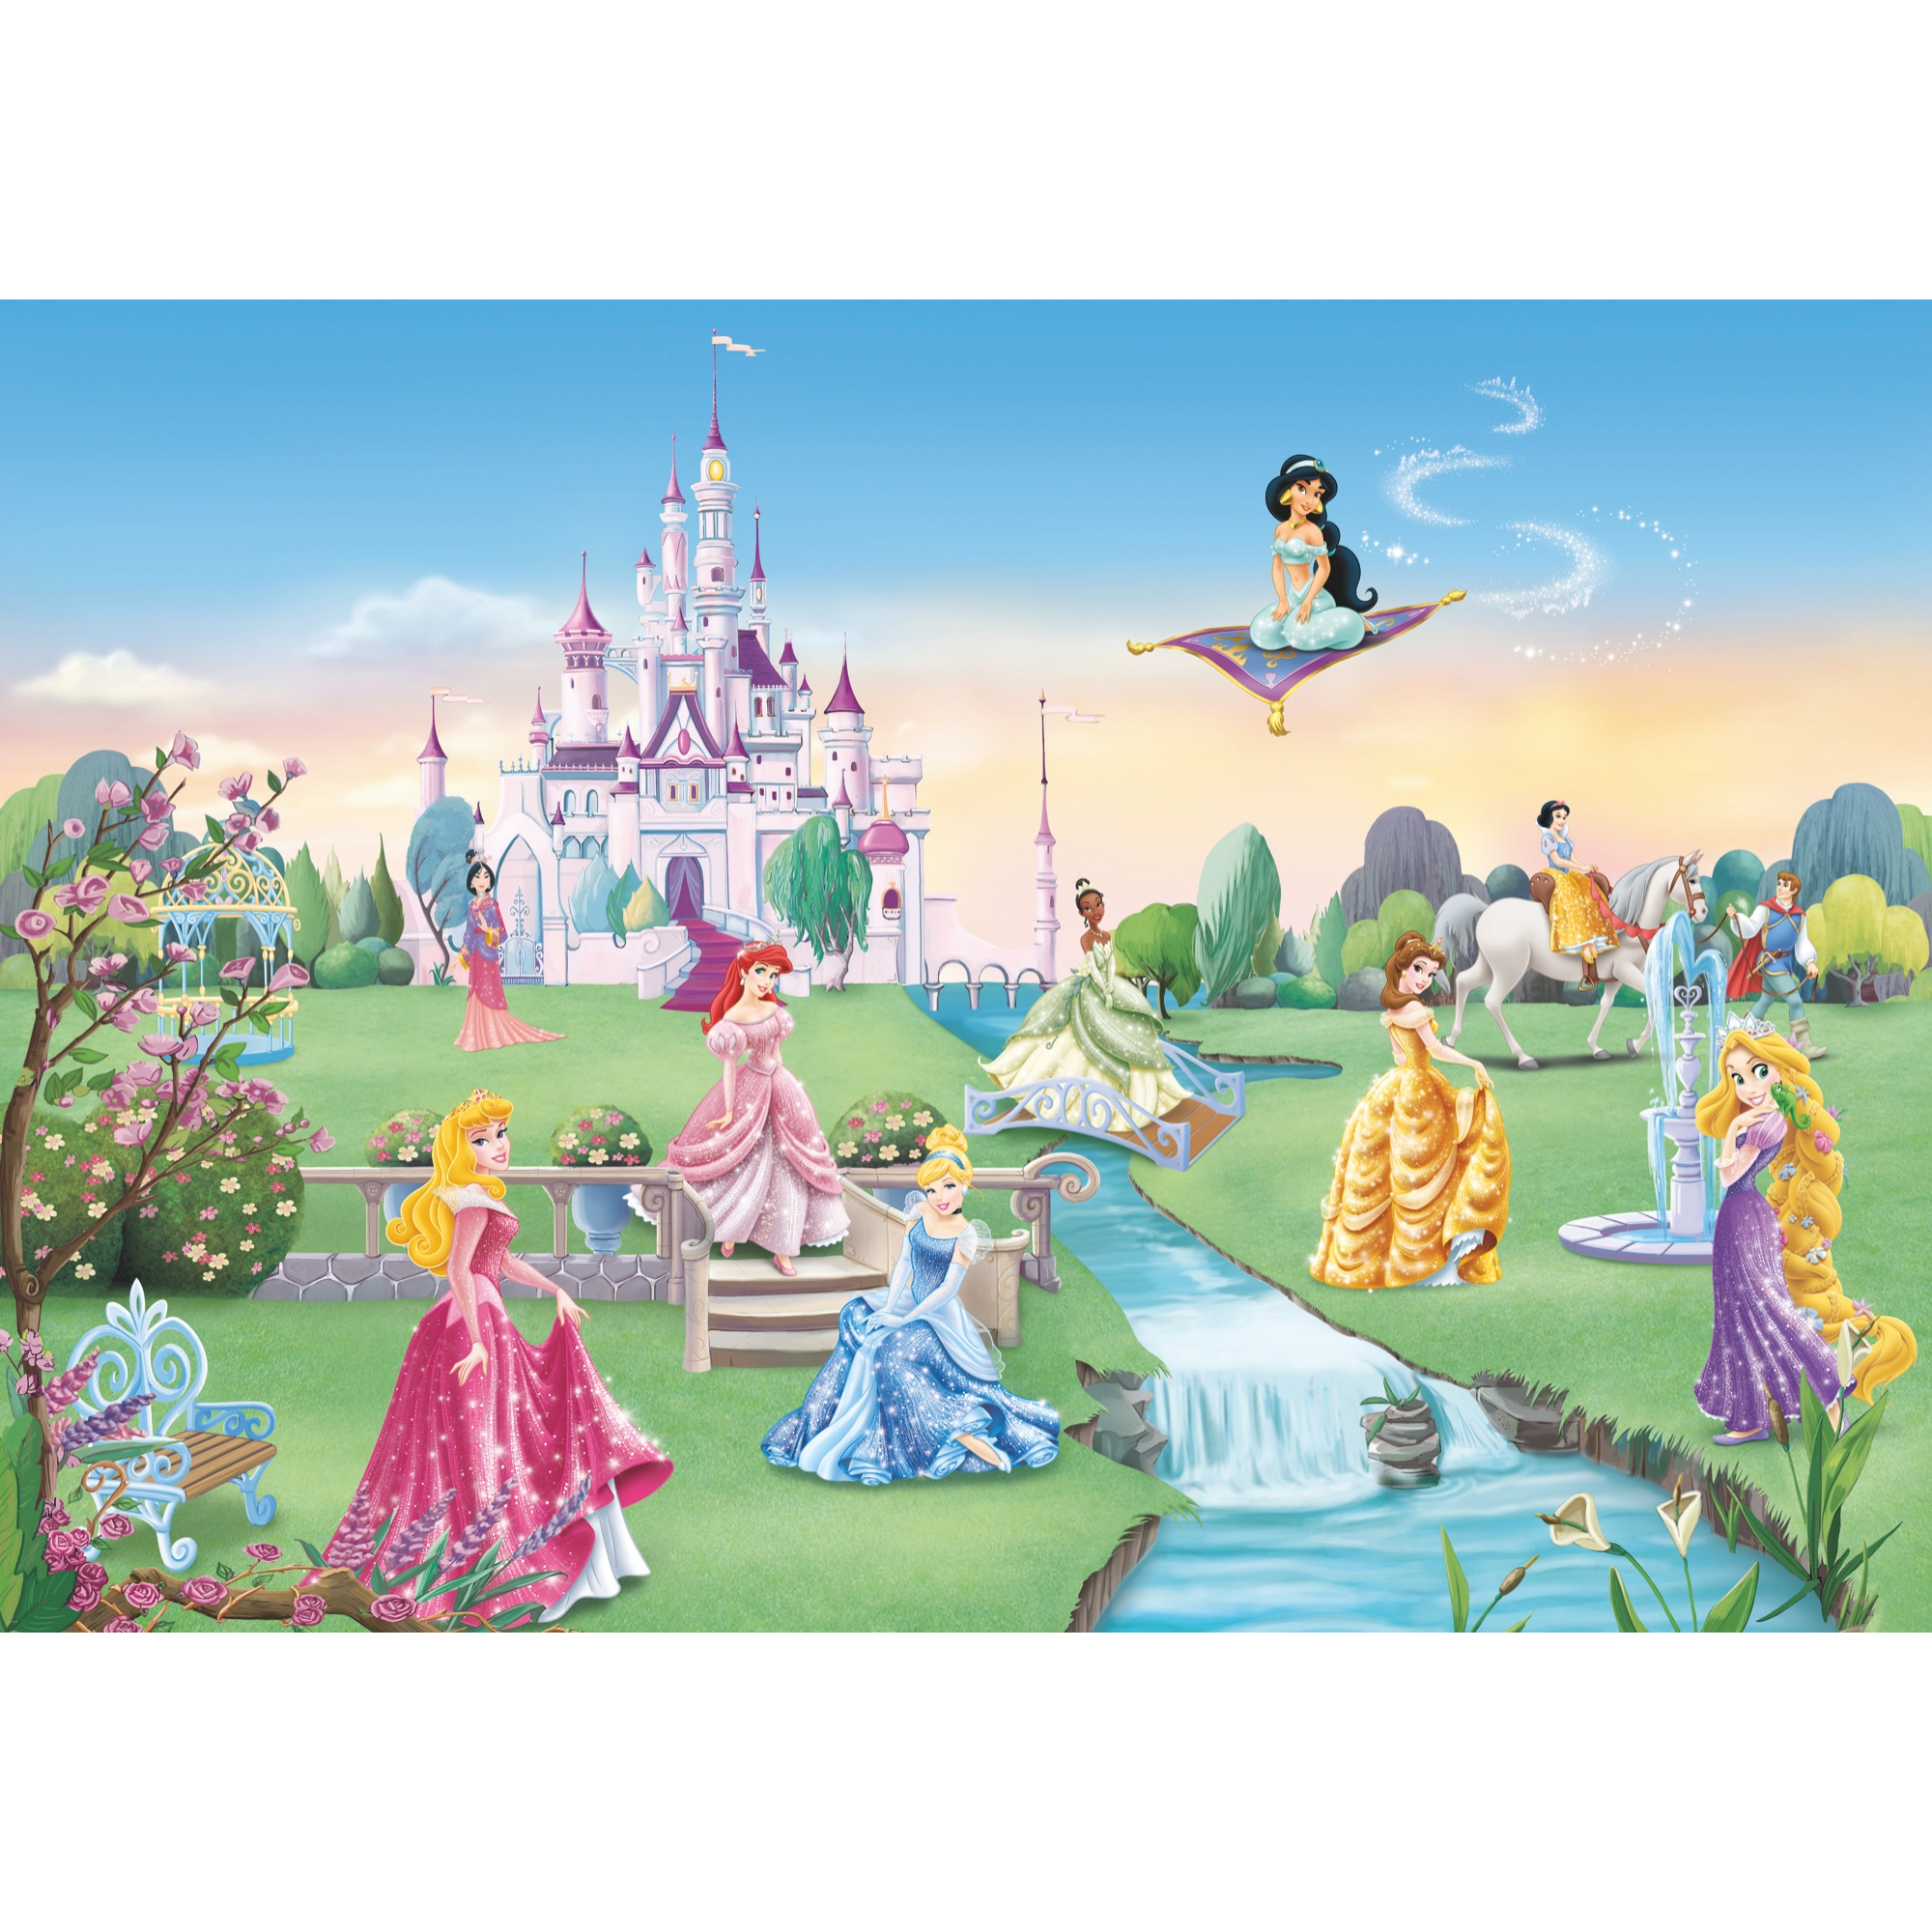 Fototapete 'Princess Castle' 368 x 254 cm + product picture